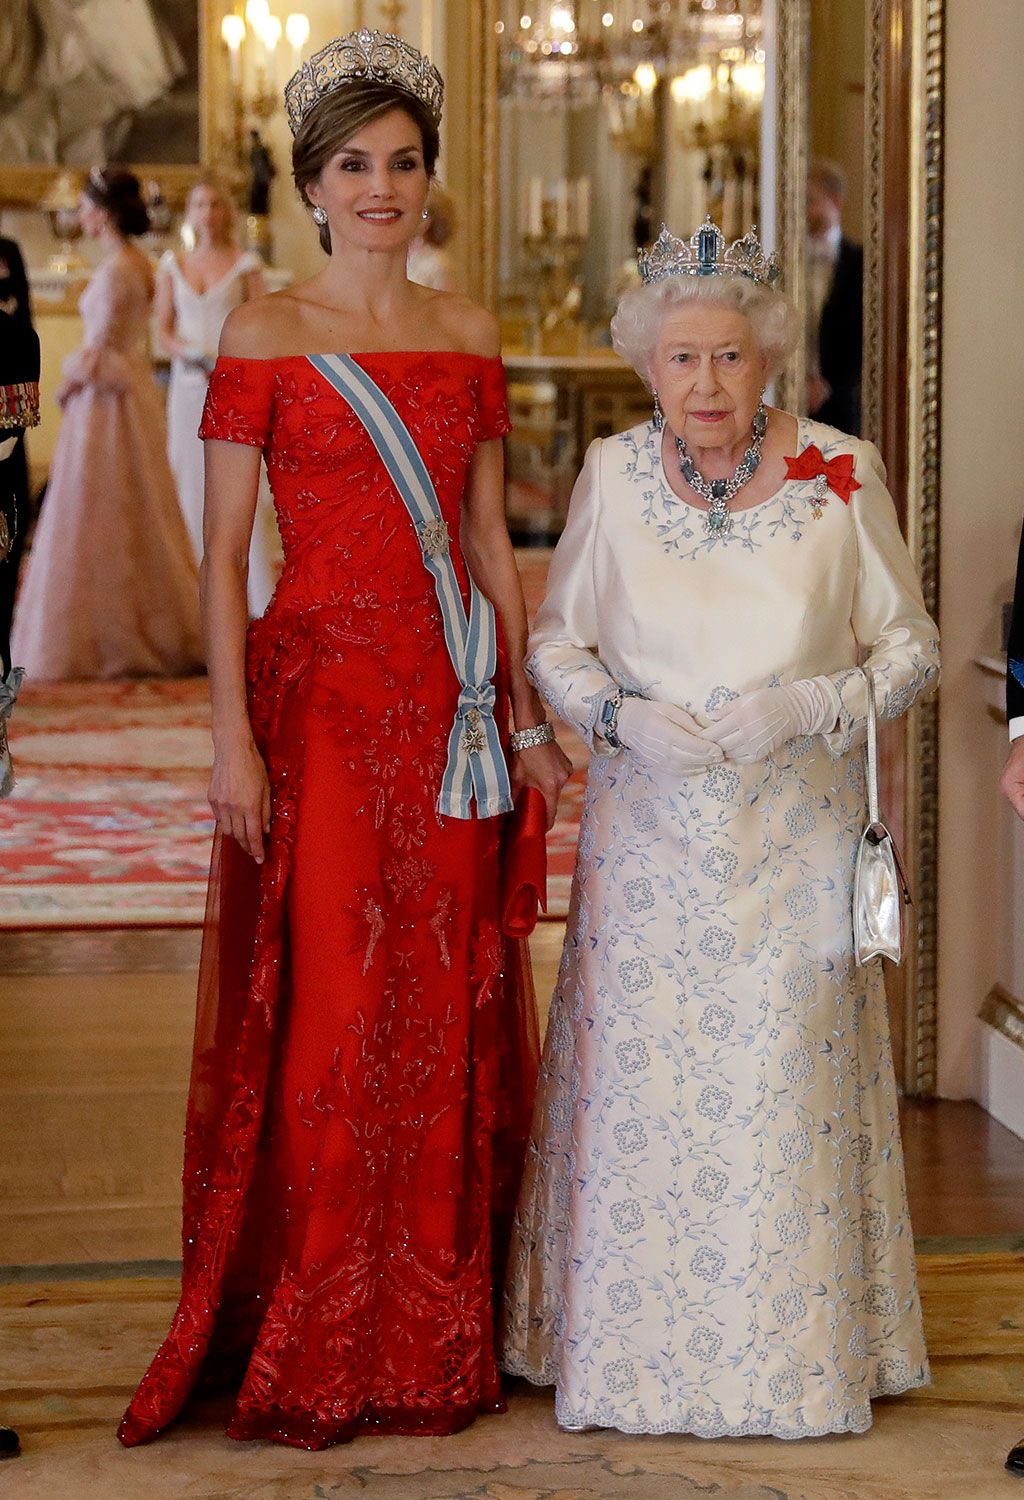 La reina Letizia y sus vestidos rojos